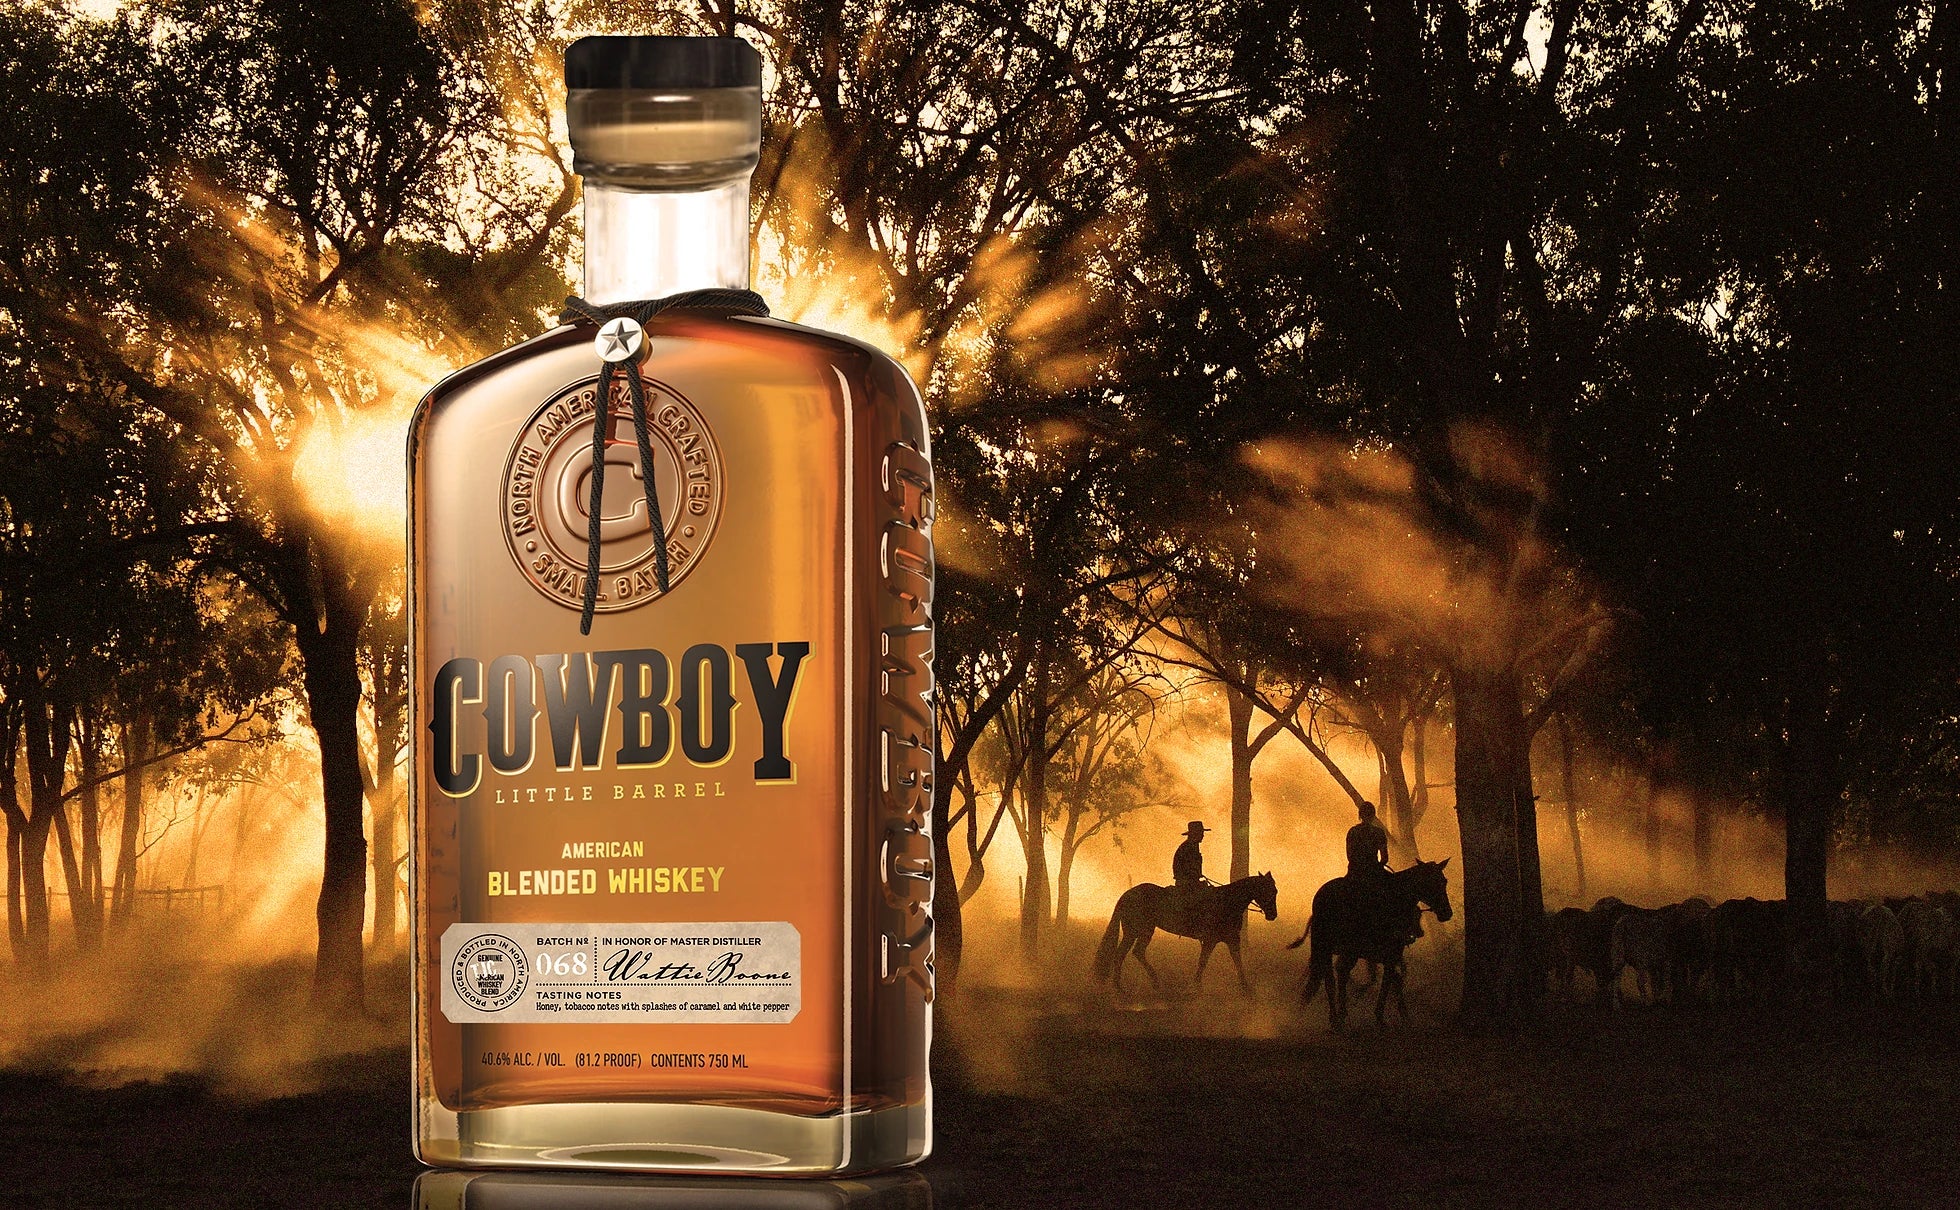 Cowboy Little Barrel Blended Whiskey